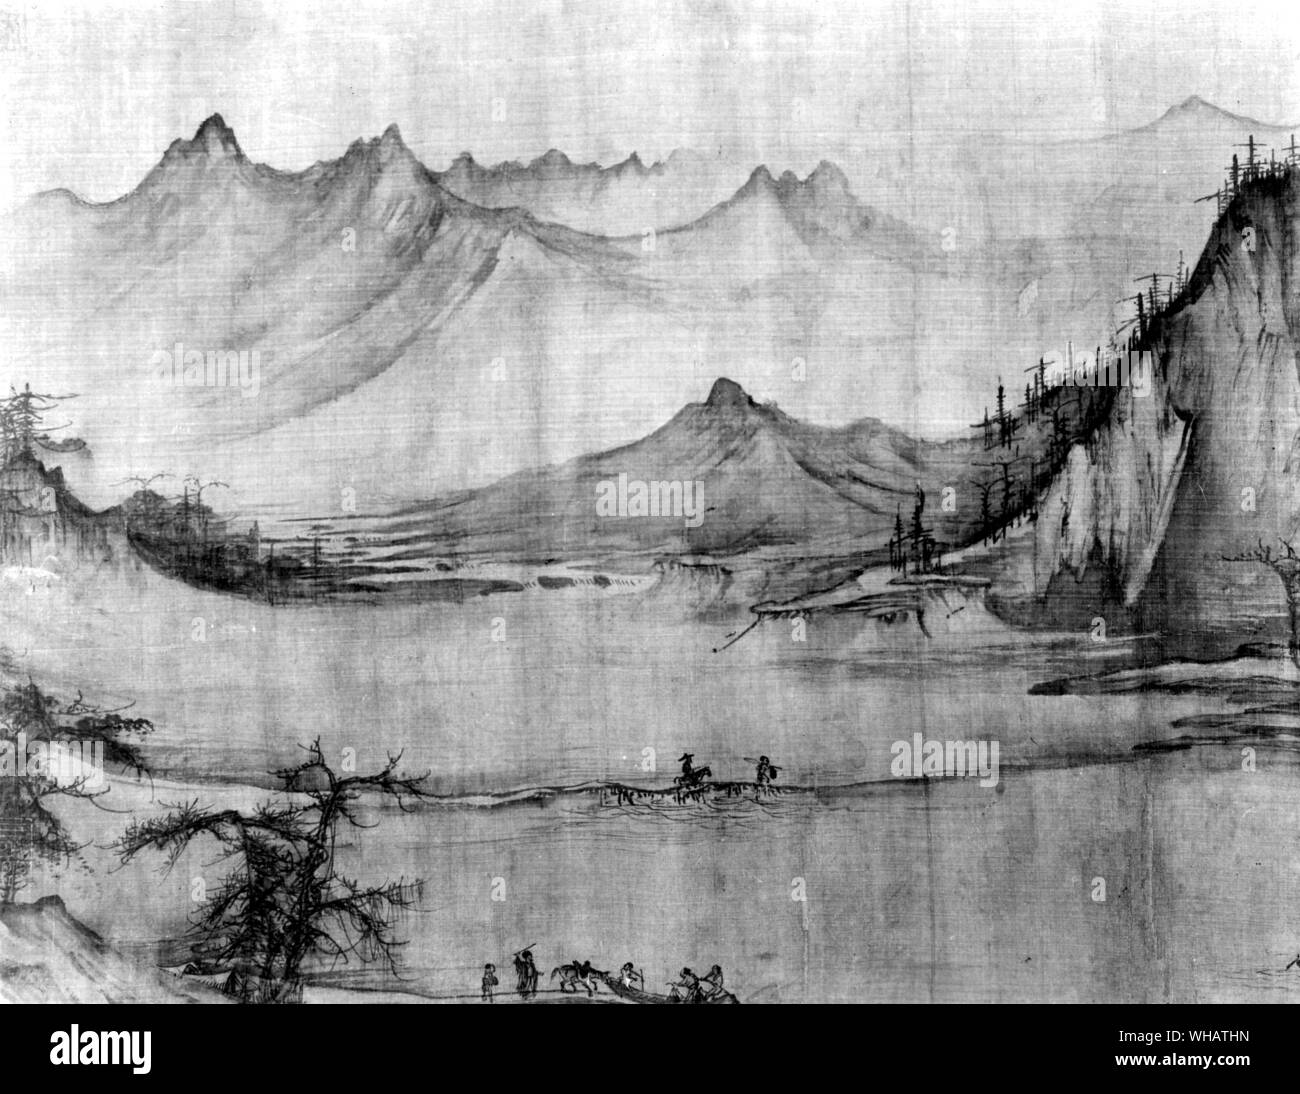 Hsu Ning Tao 11e siècle. La pêche dans un ruisseau de montagne. Le nord de Sung. Encre sur soie Banque D'Images